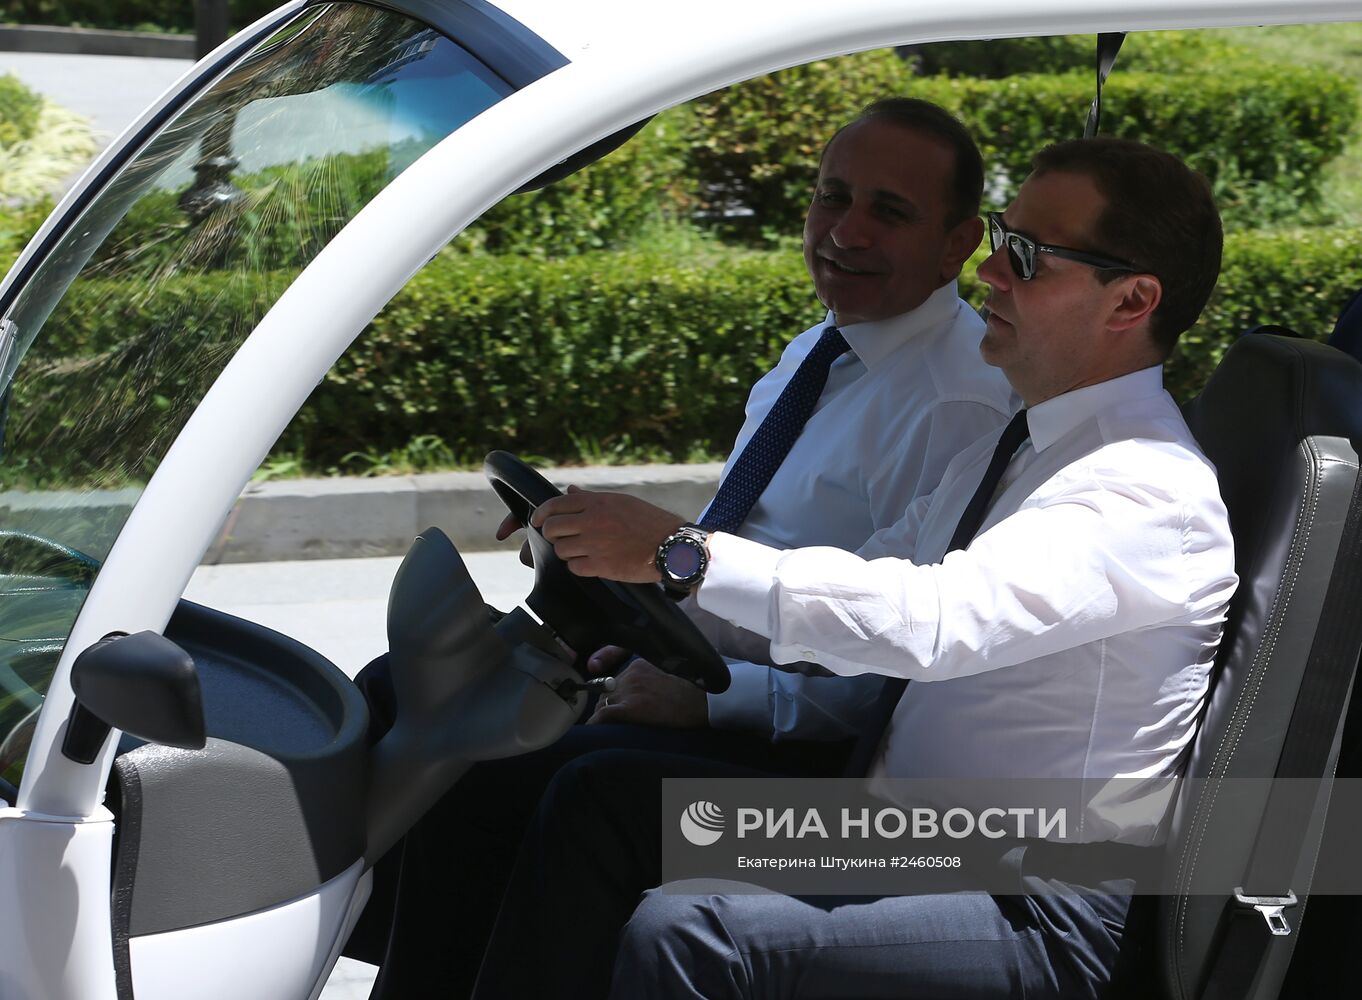 Д.Медведев провел переговоры с премьер-министромАрмении О.Абраамяном в Сочи